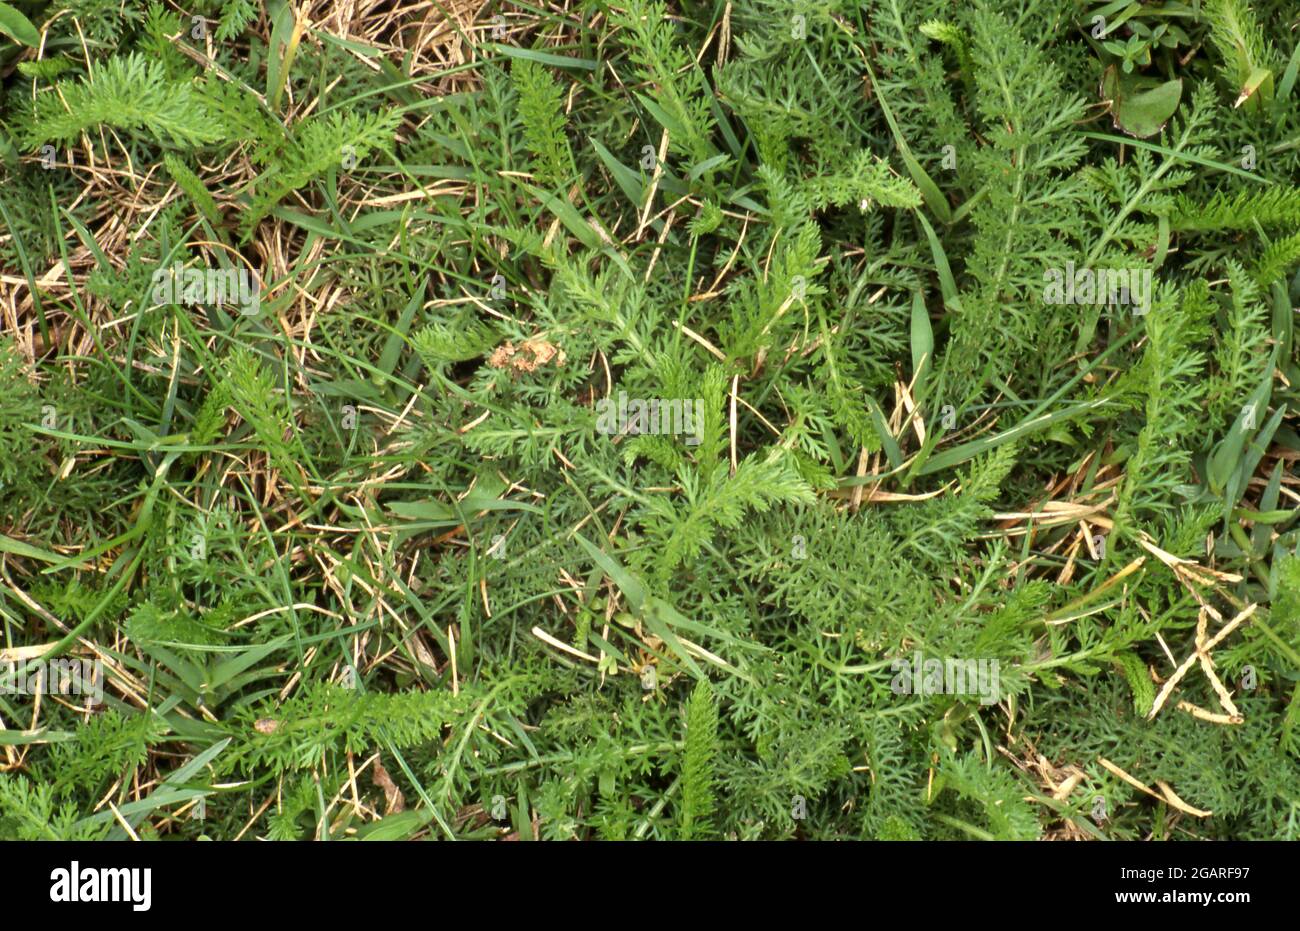 L'Achillea millefolium est une plante herbacée vivace. Dans une pelouse est peut former un épais tapis d'épandage et devenir une herbe envahissante. Banque D'Images